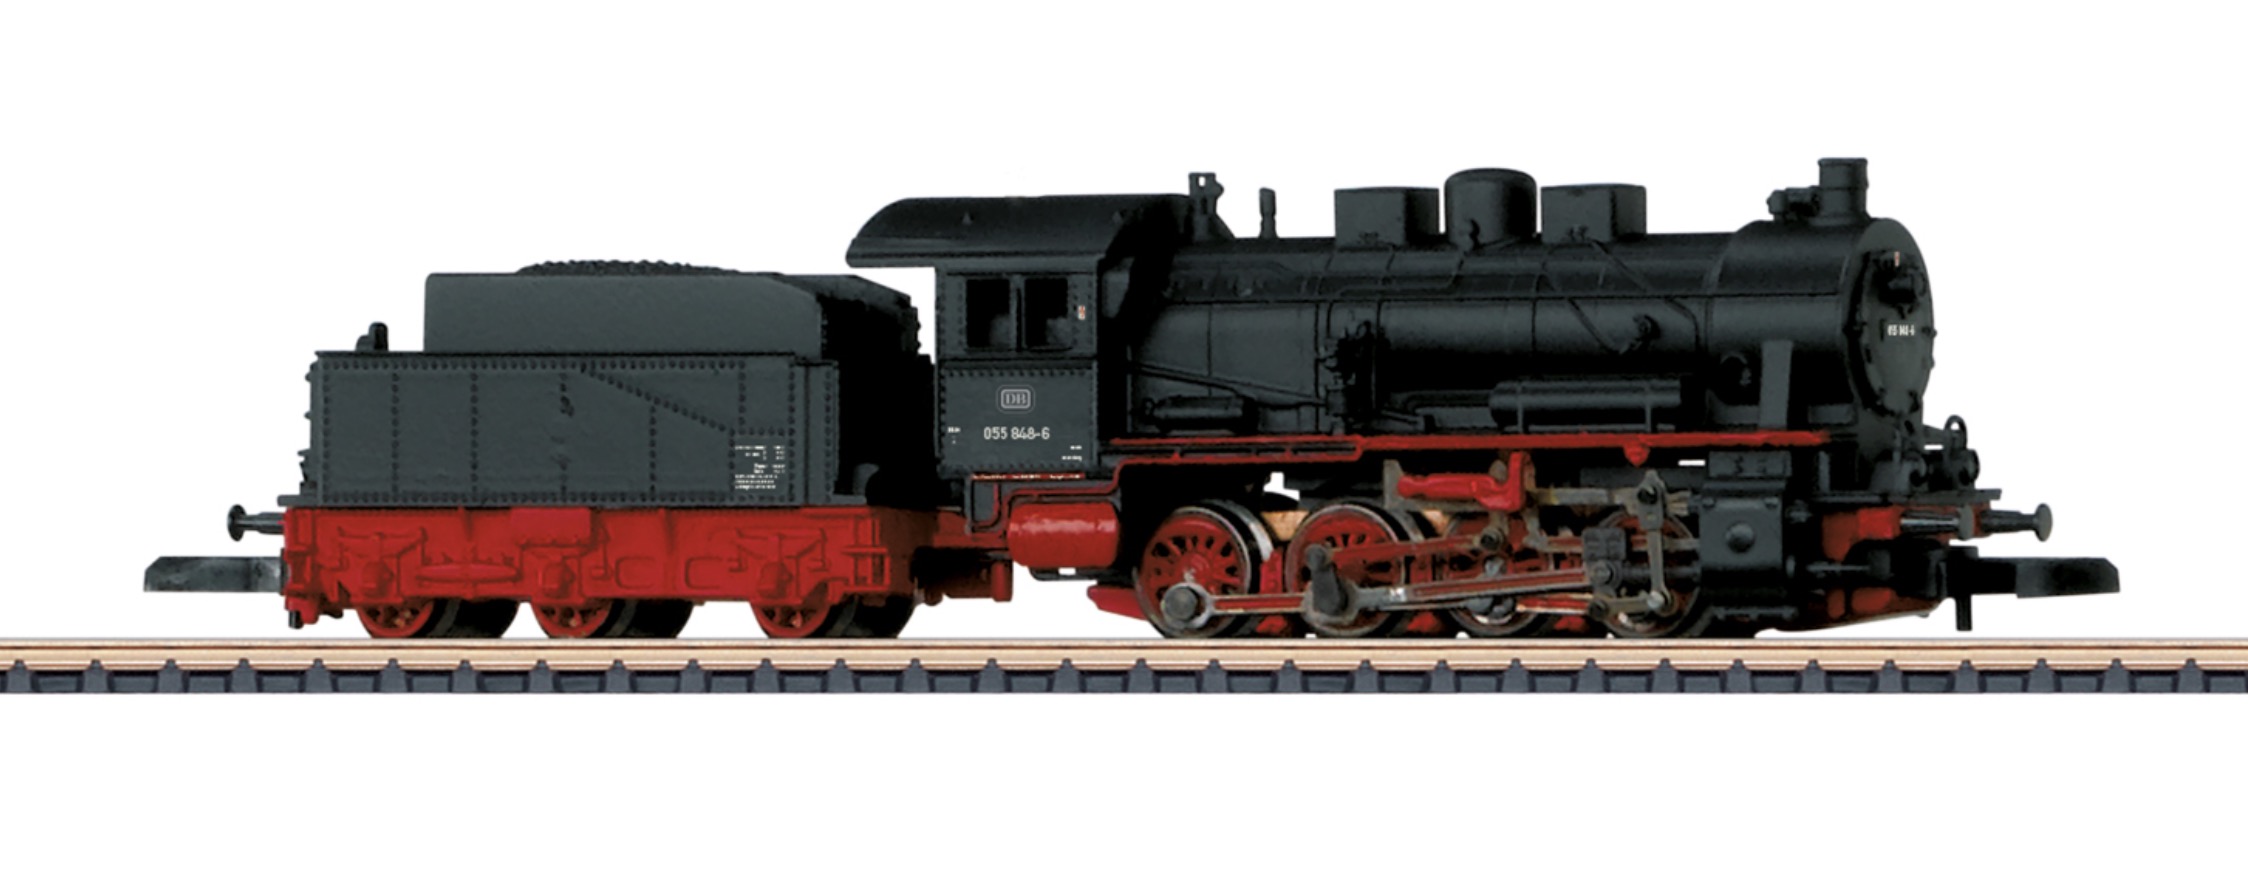 Z Scale - Märklin - 88986 - Locomotive, Steam, 0-8-0, Class 55, Epoch IV - Deutsche Bundesbahn - 055 848-6